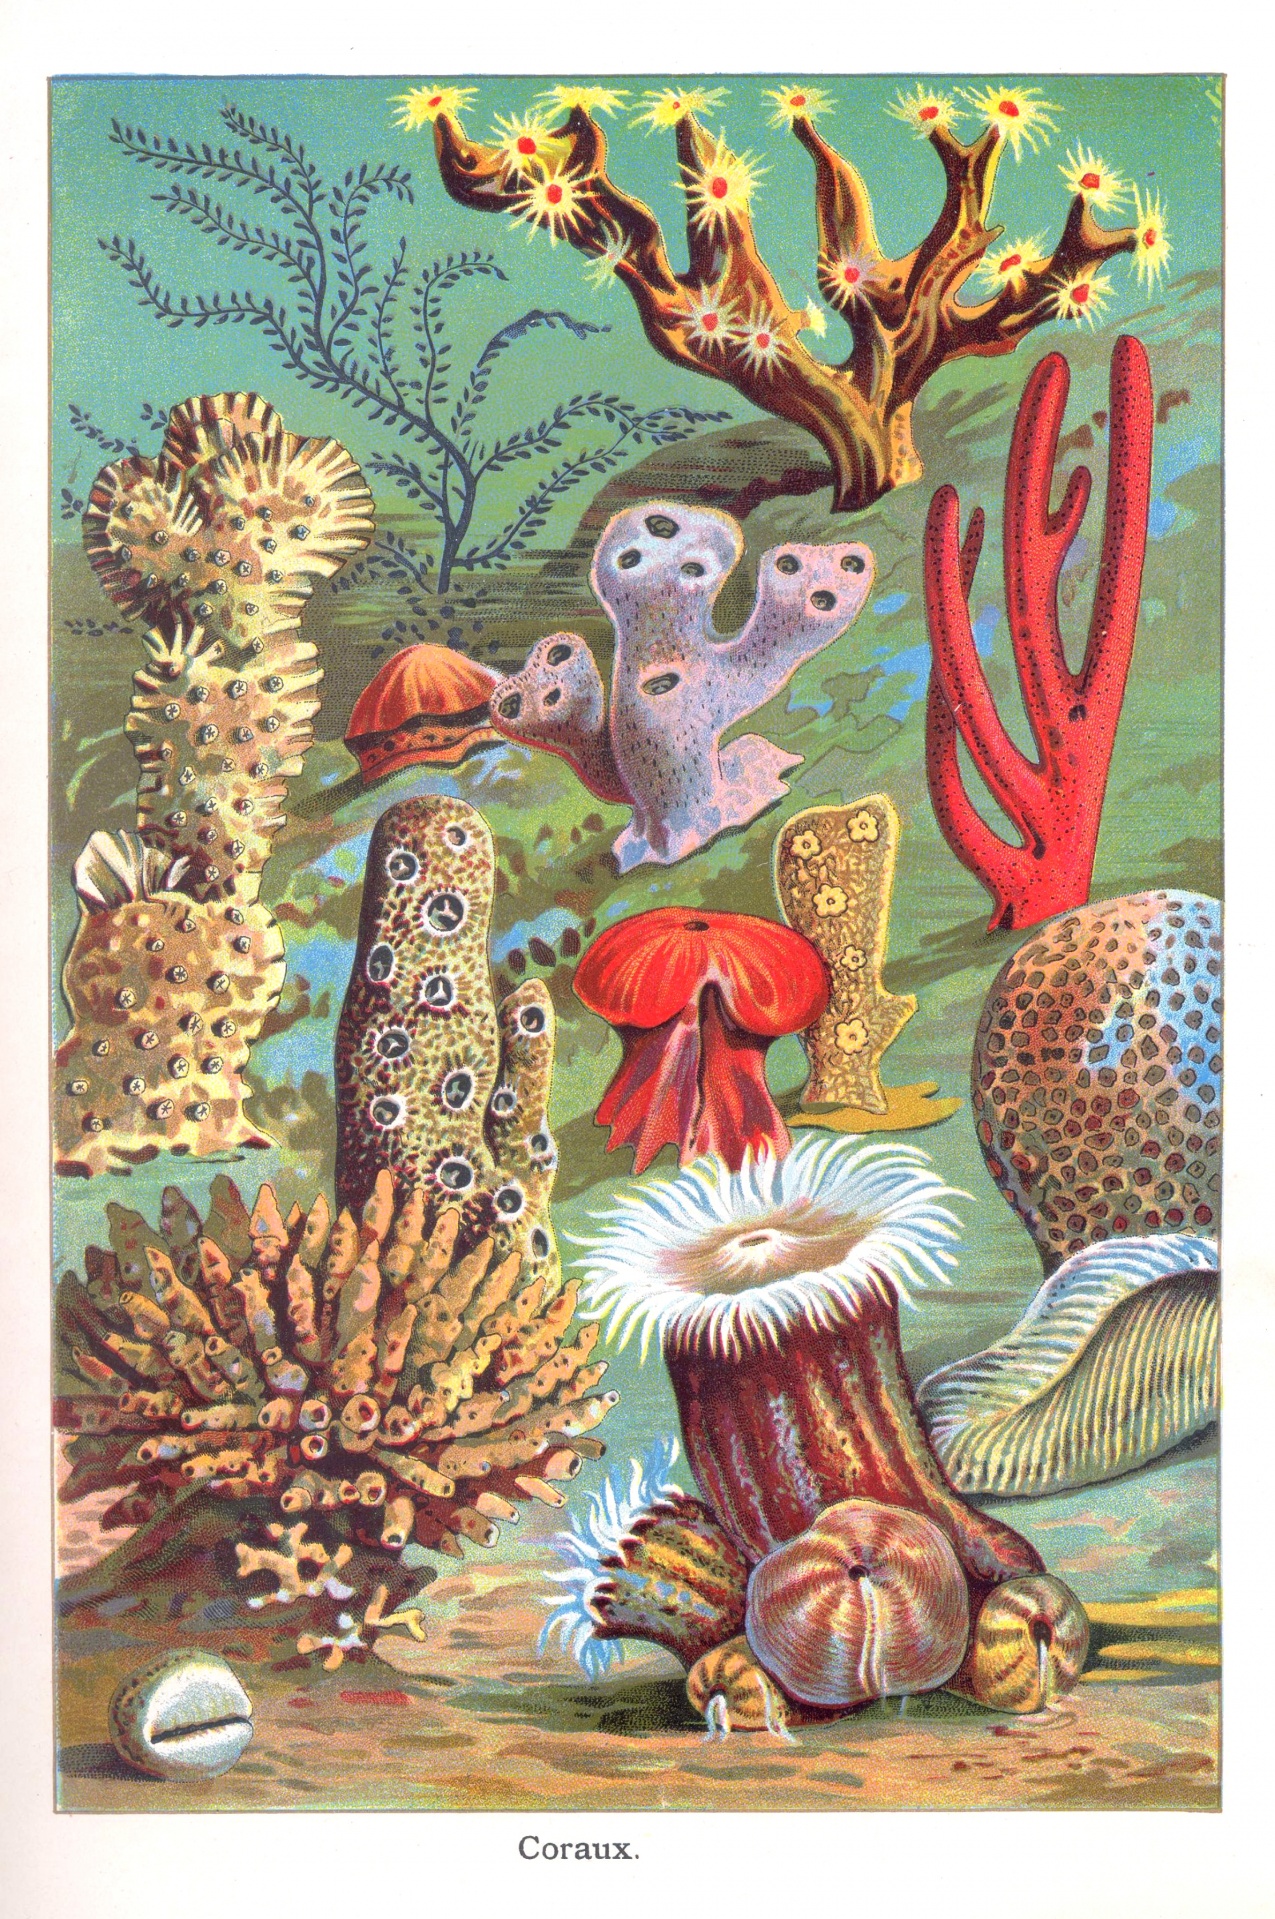 Coral reef vintage old antique illustration image restored stains removed